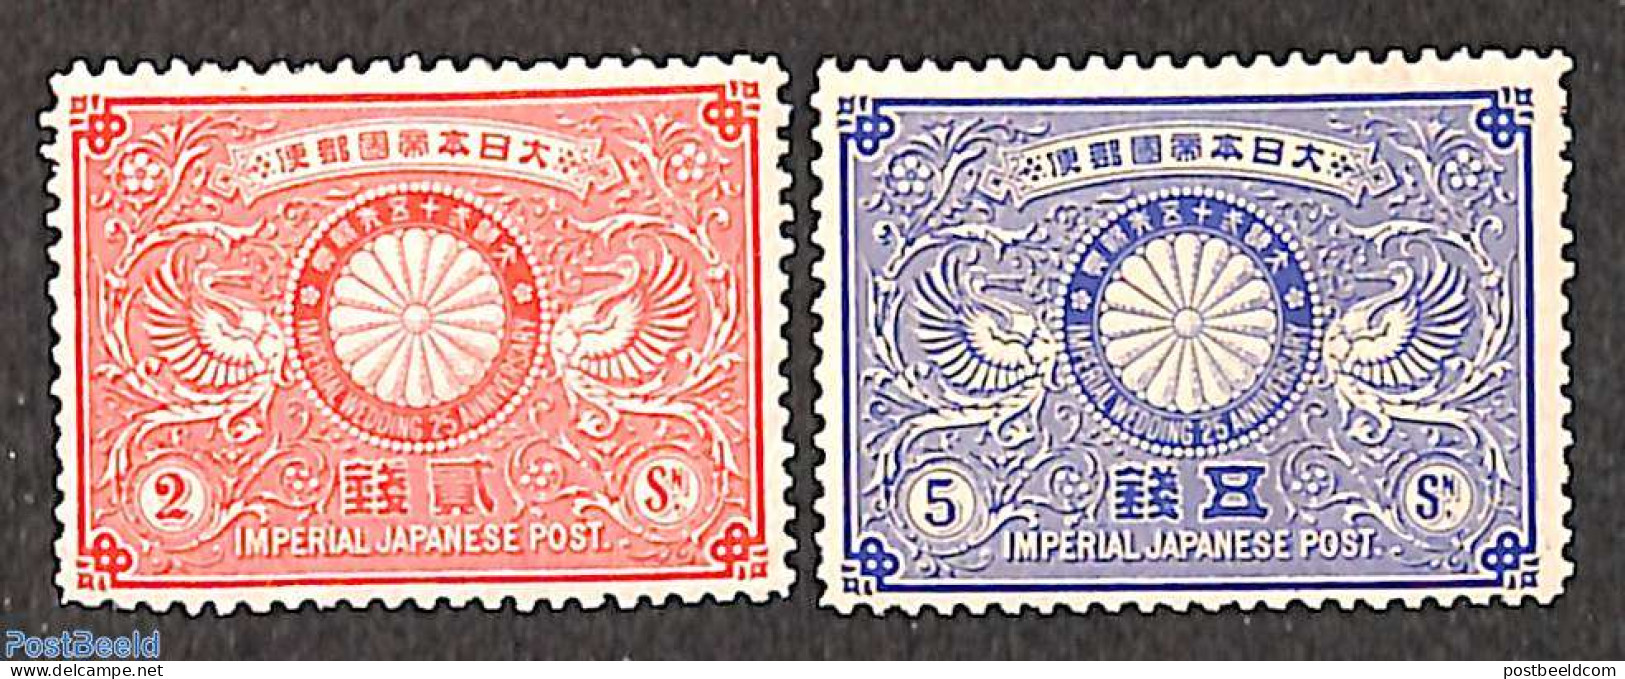 Japan 1894 Silver Wedding 2v, Unused (hinged), History - Kings & Queens (Royalty) - Ungebraucht